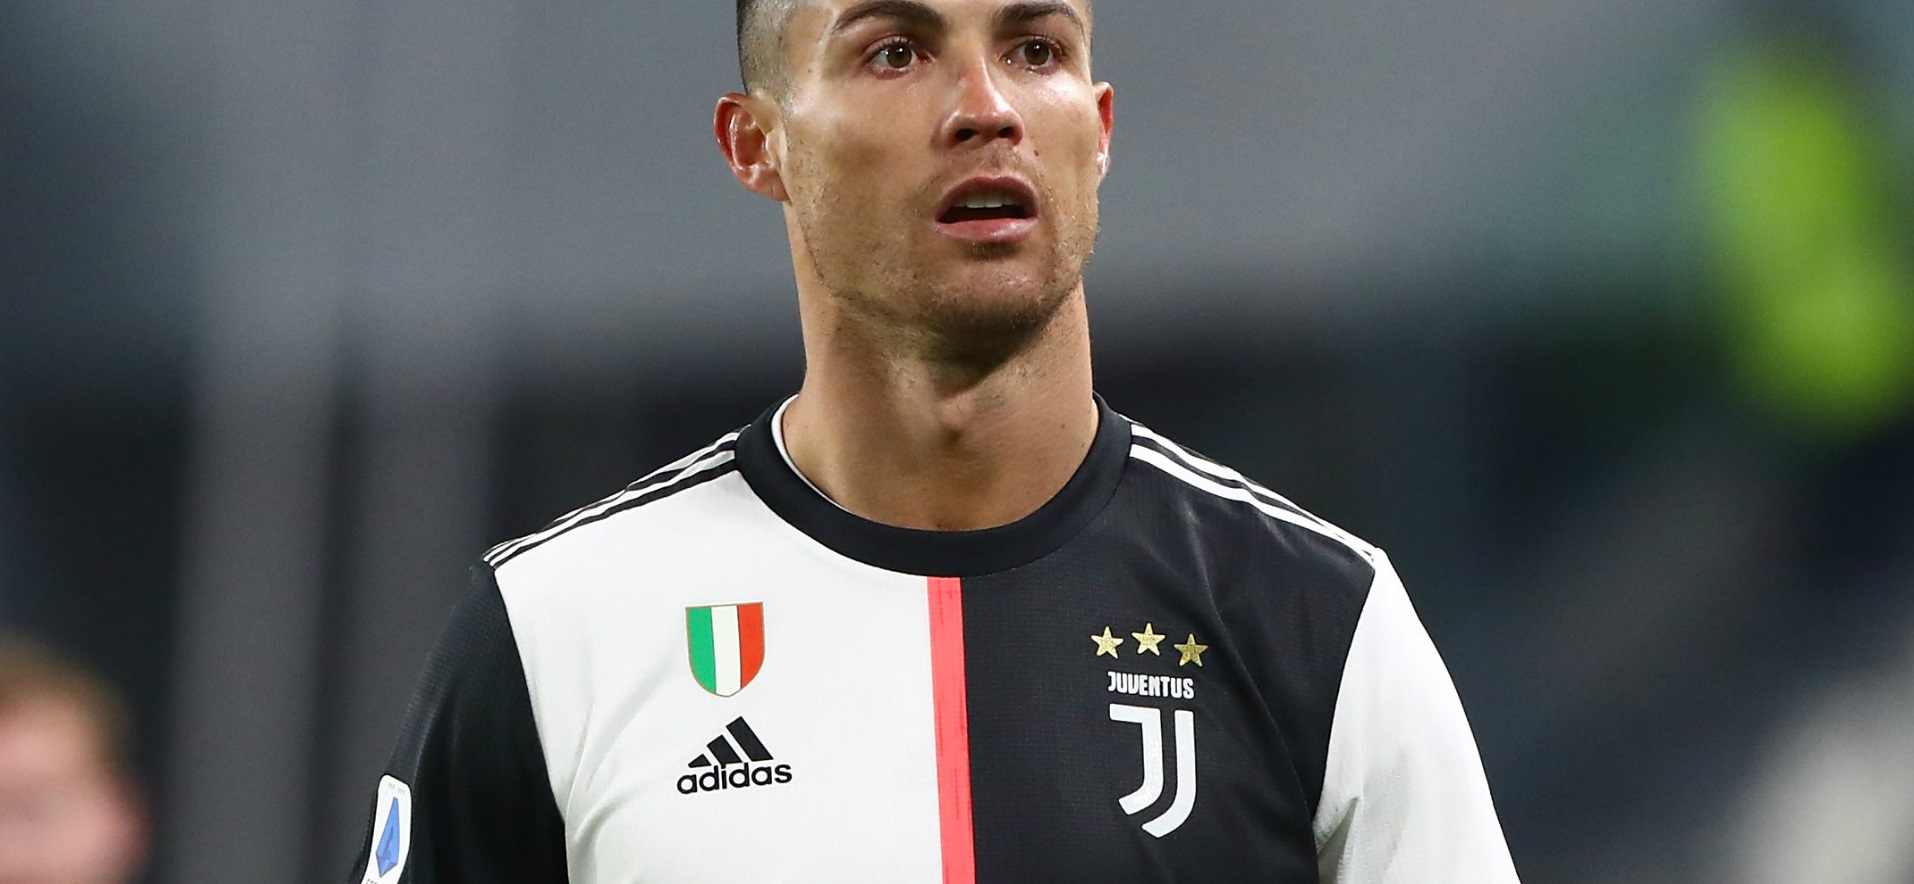 « La Juventus a abandonné le jeu d’équipe pour un soliste » : l’ancien président de la Juve critique Ronaldo